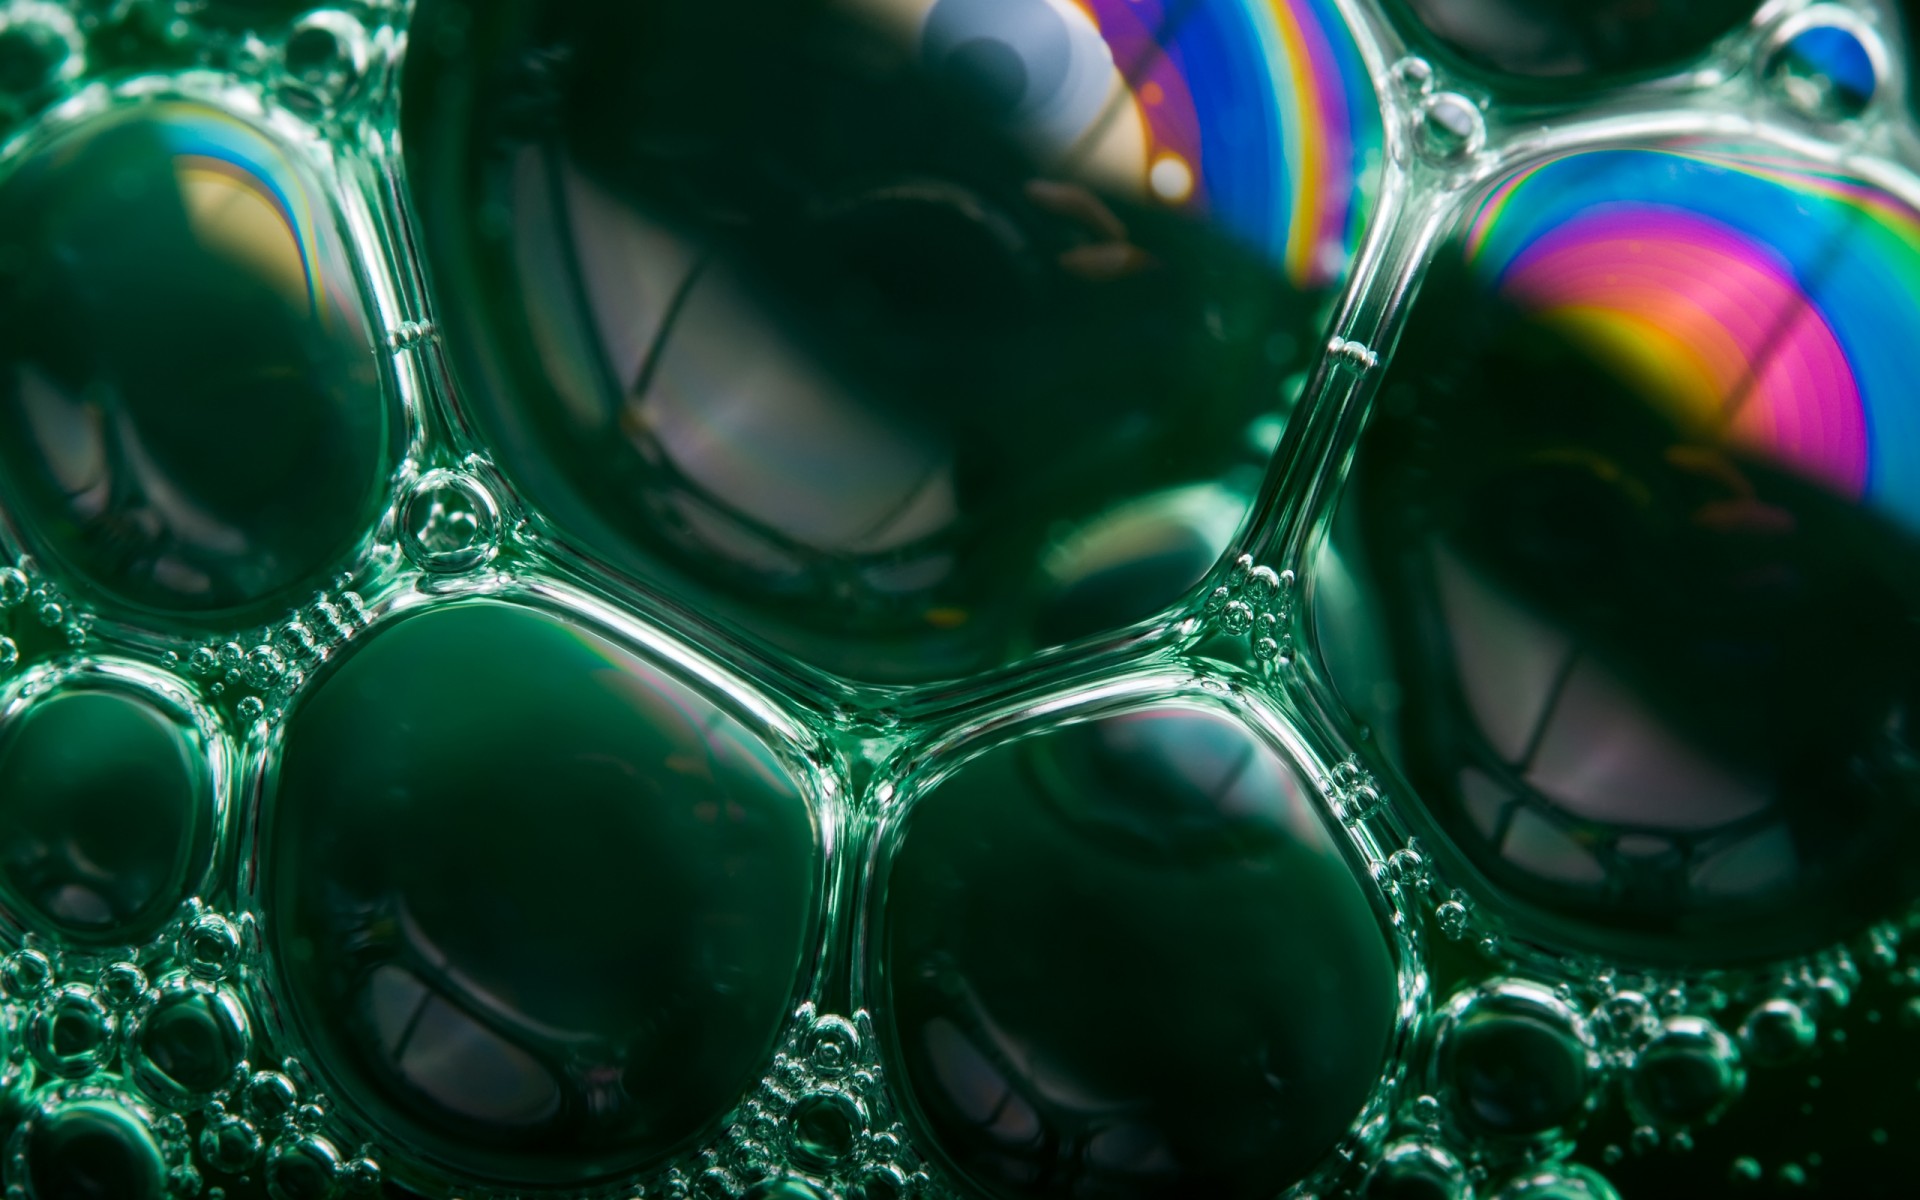 мыльный пузырь радуги радуга мыло пузыри зеленый